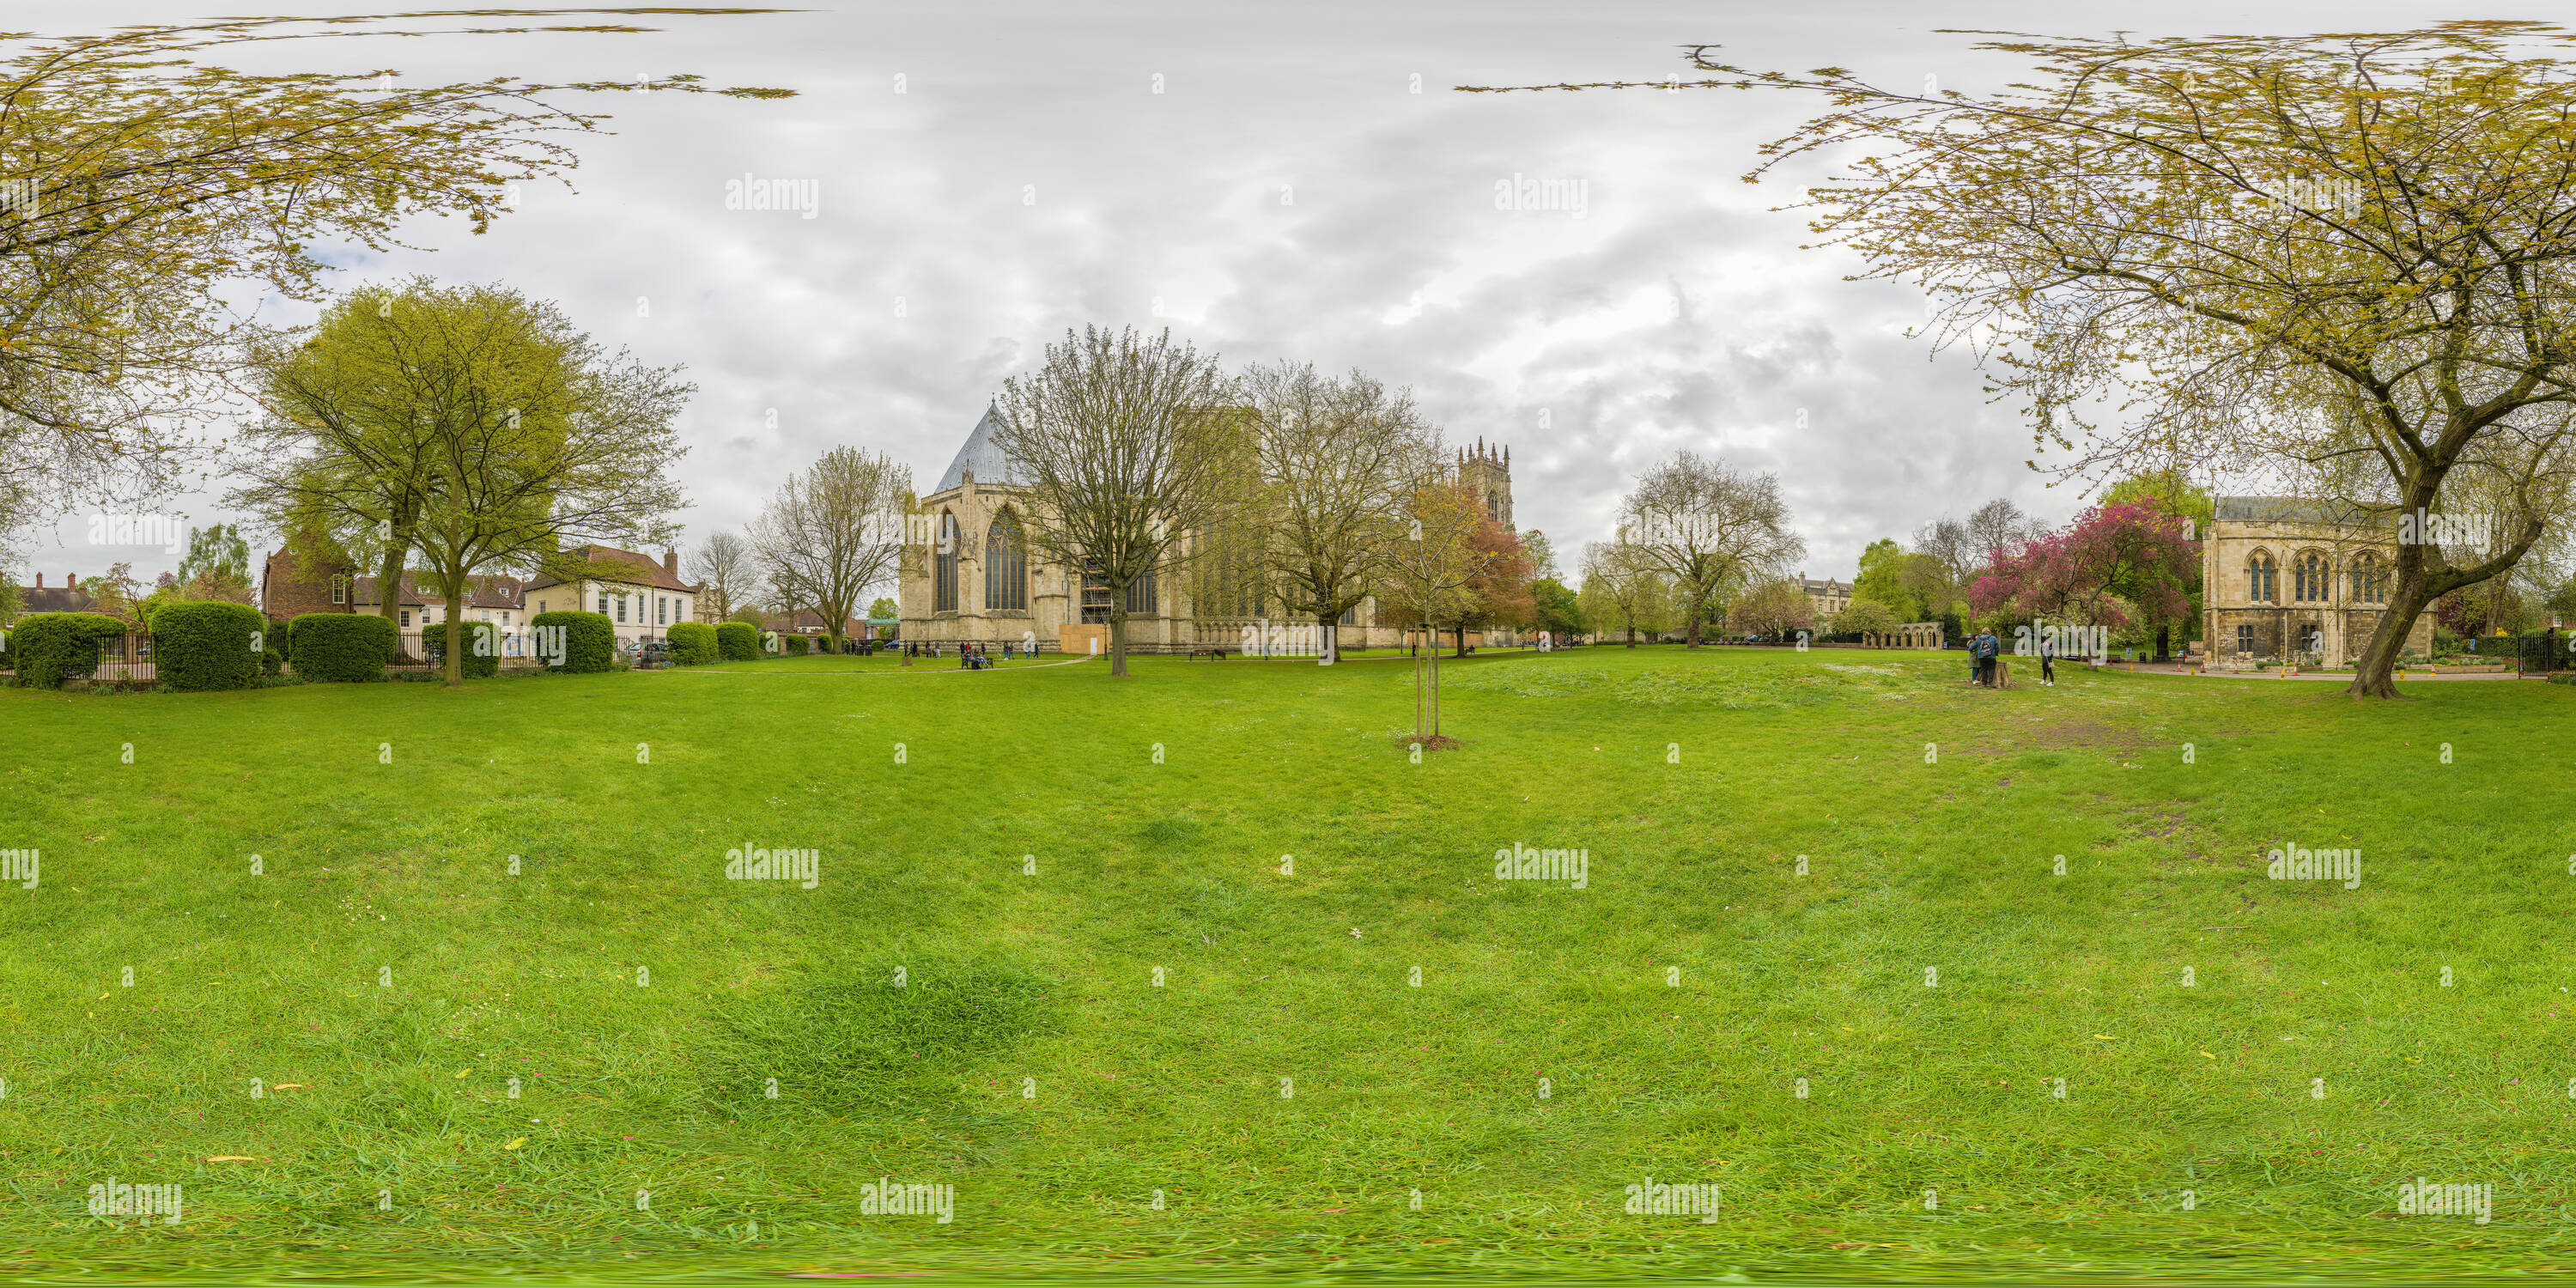 Visualizzazione panoramica a 360 gradi di Dean's Park e il nord esterno (con la Chapter House) e PALAZZO VECCHIO, della cattedrale medievale (minster) a York, Inghilterra, su una molla di cielo coperto da